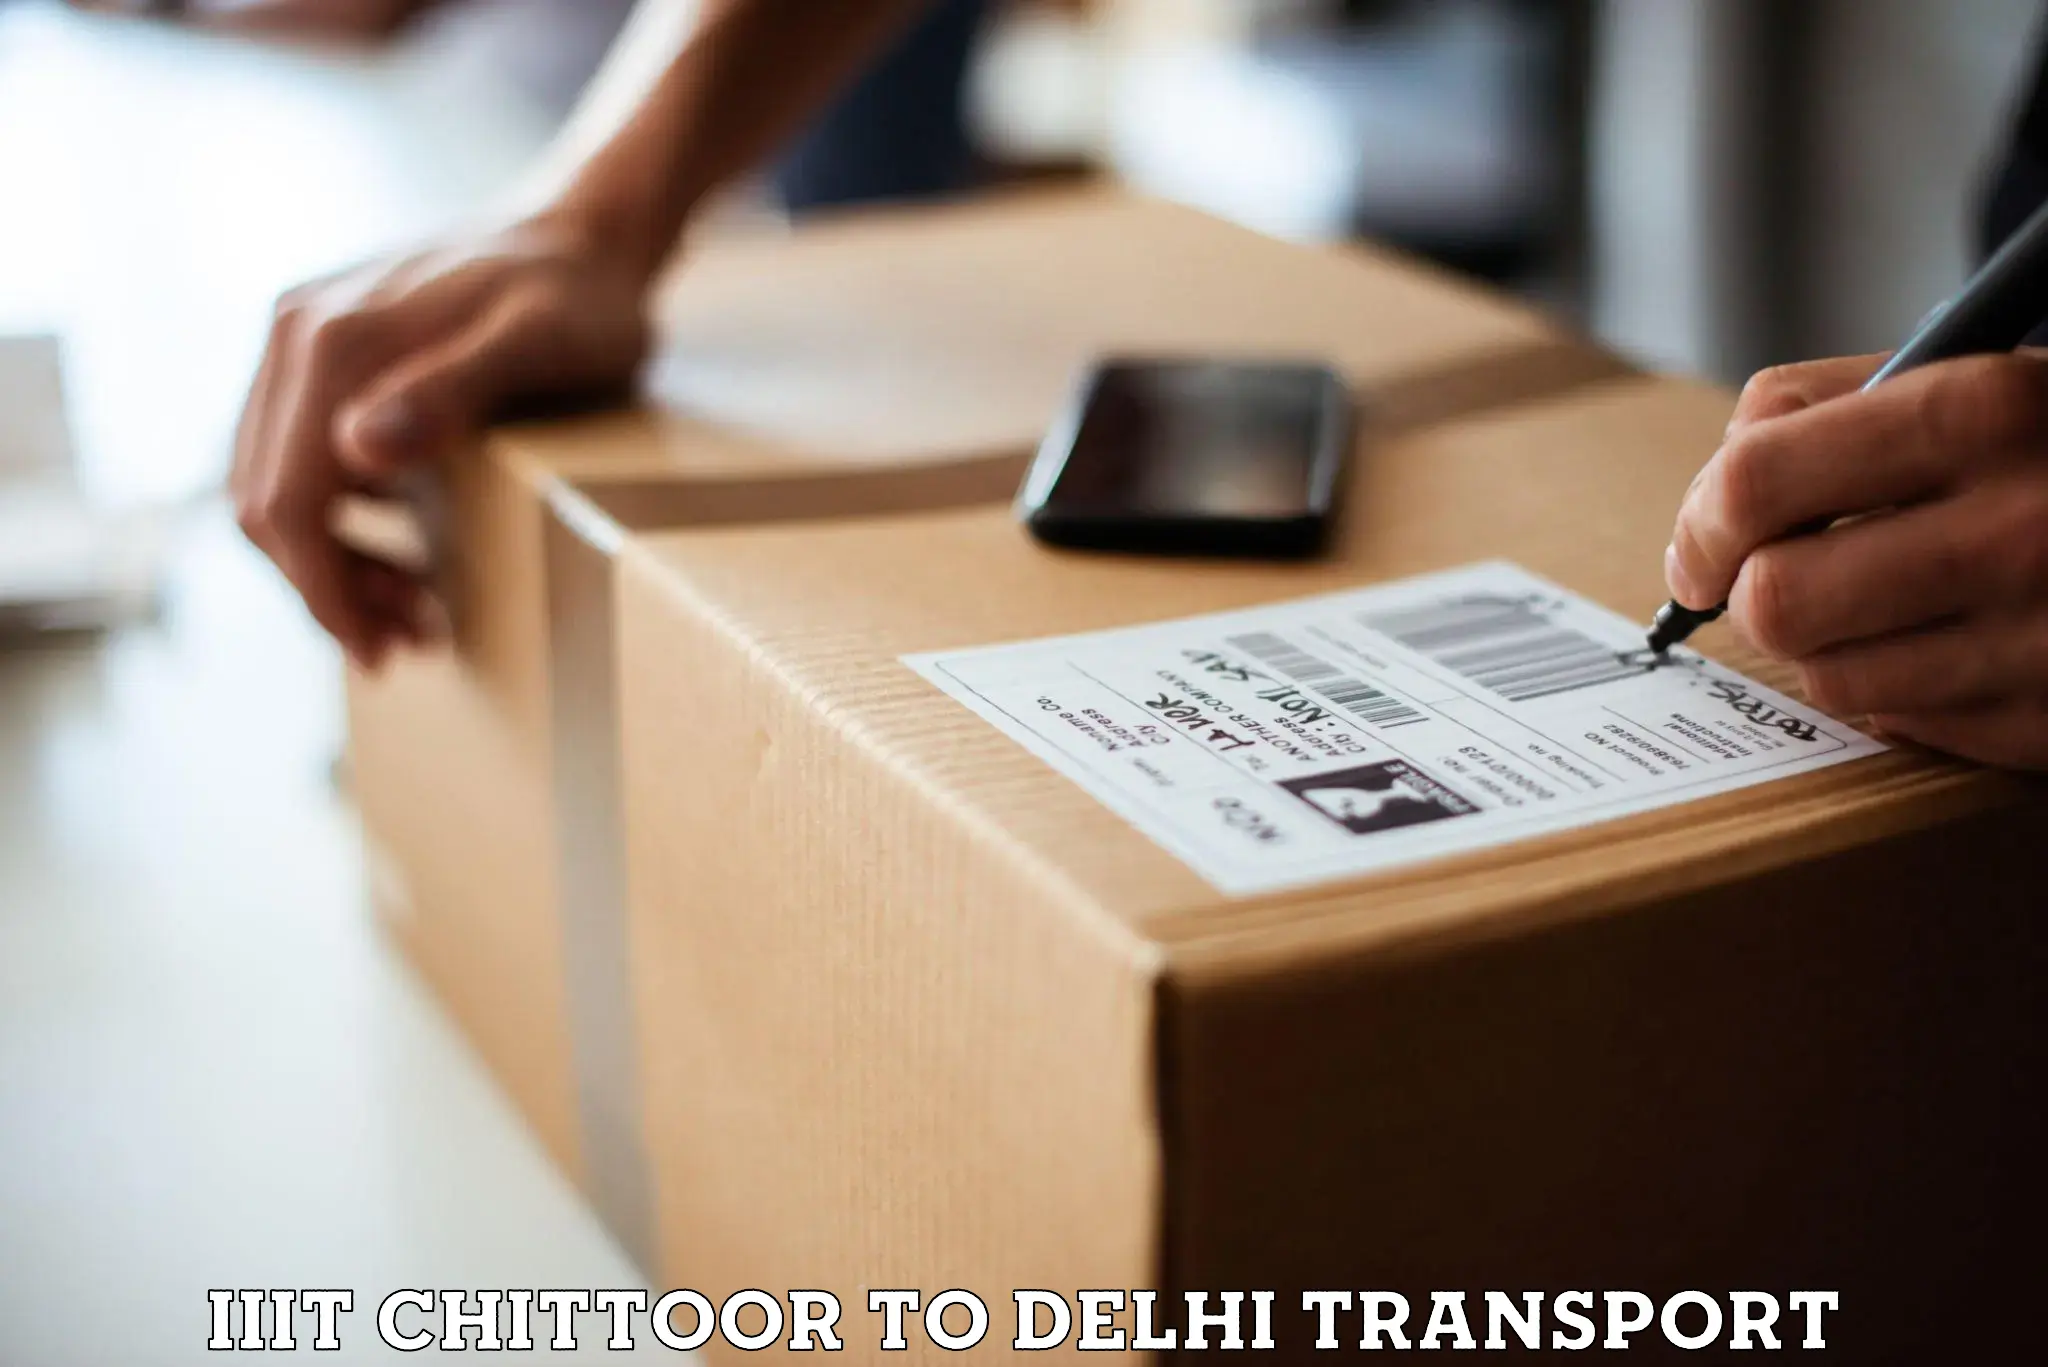 Air cargo transport services IIIT Chittoor to Delhi